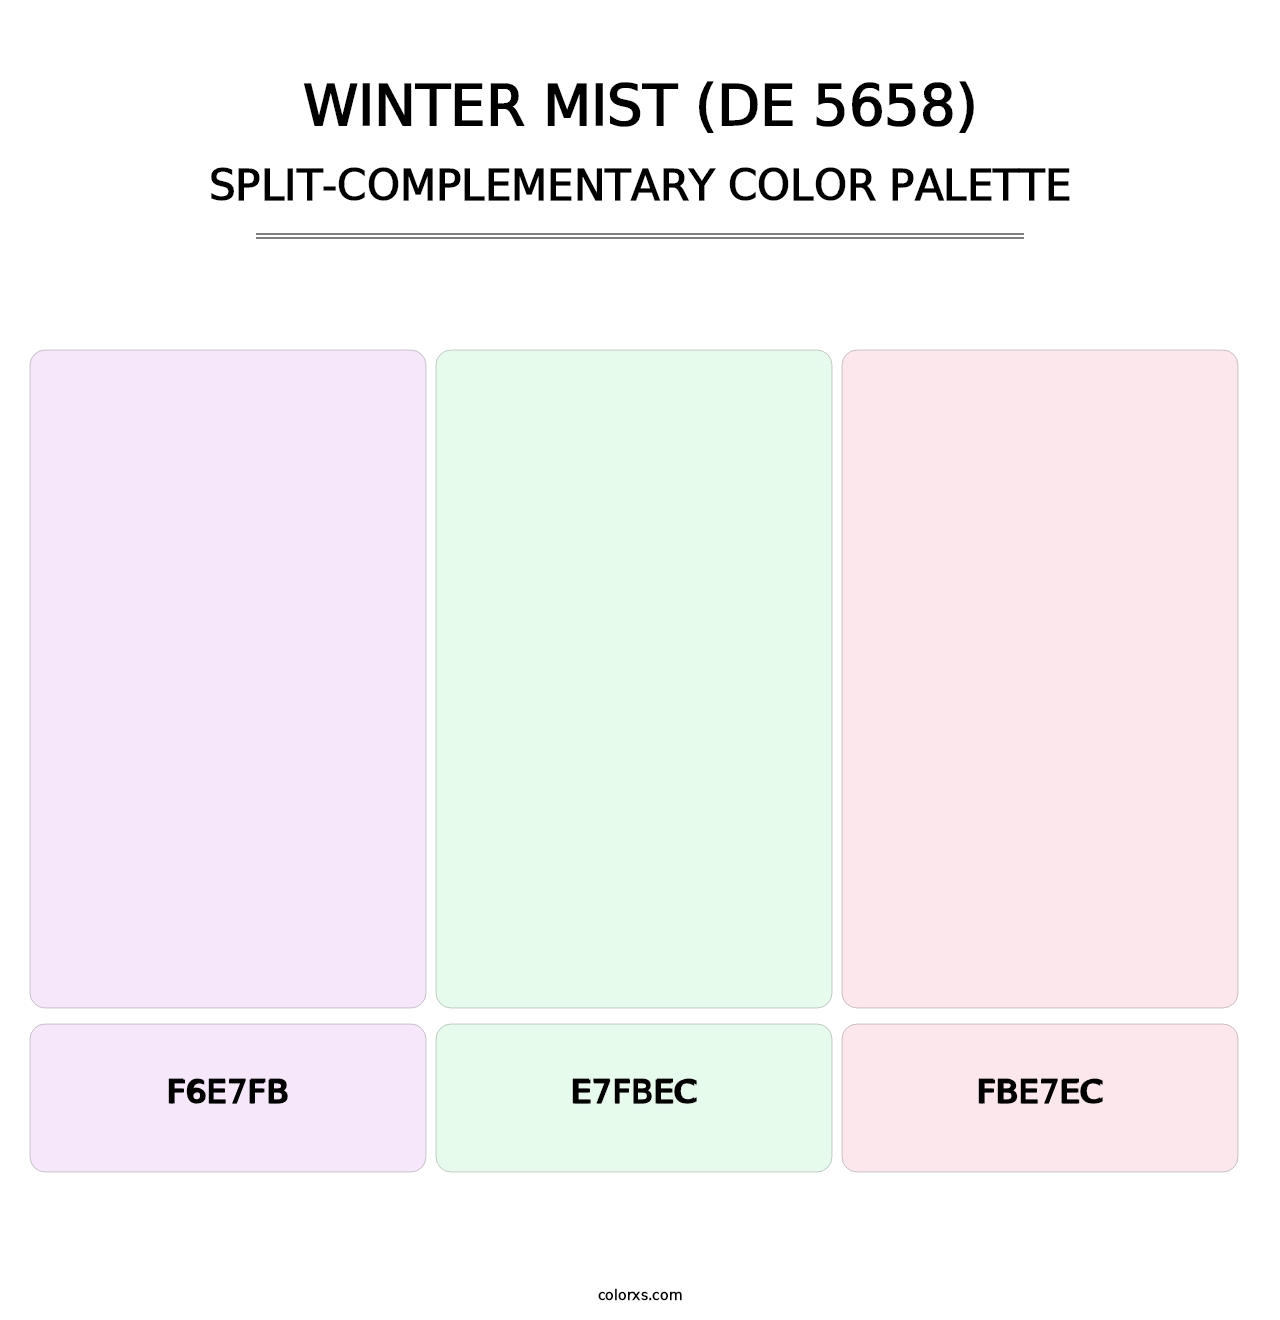 Winter Mist (DE 5658) - Split-Complementary Color Palette